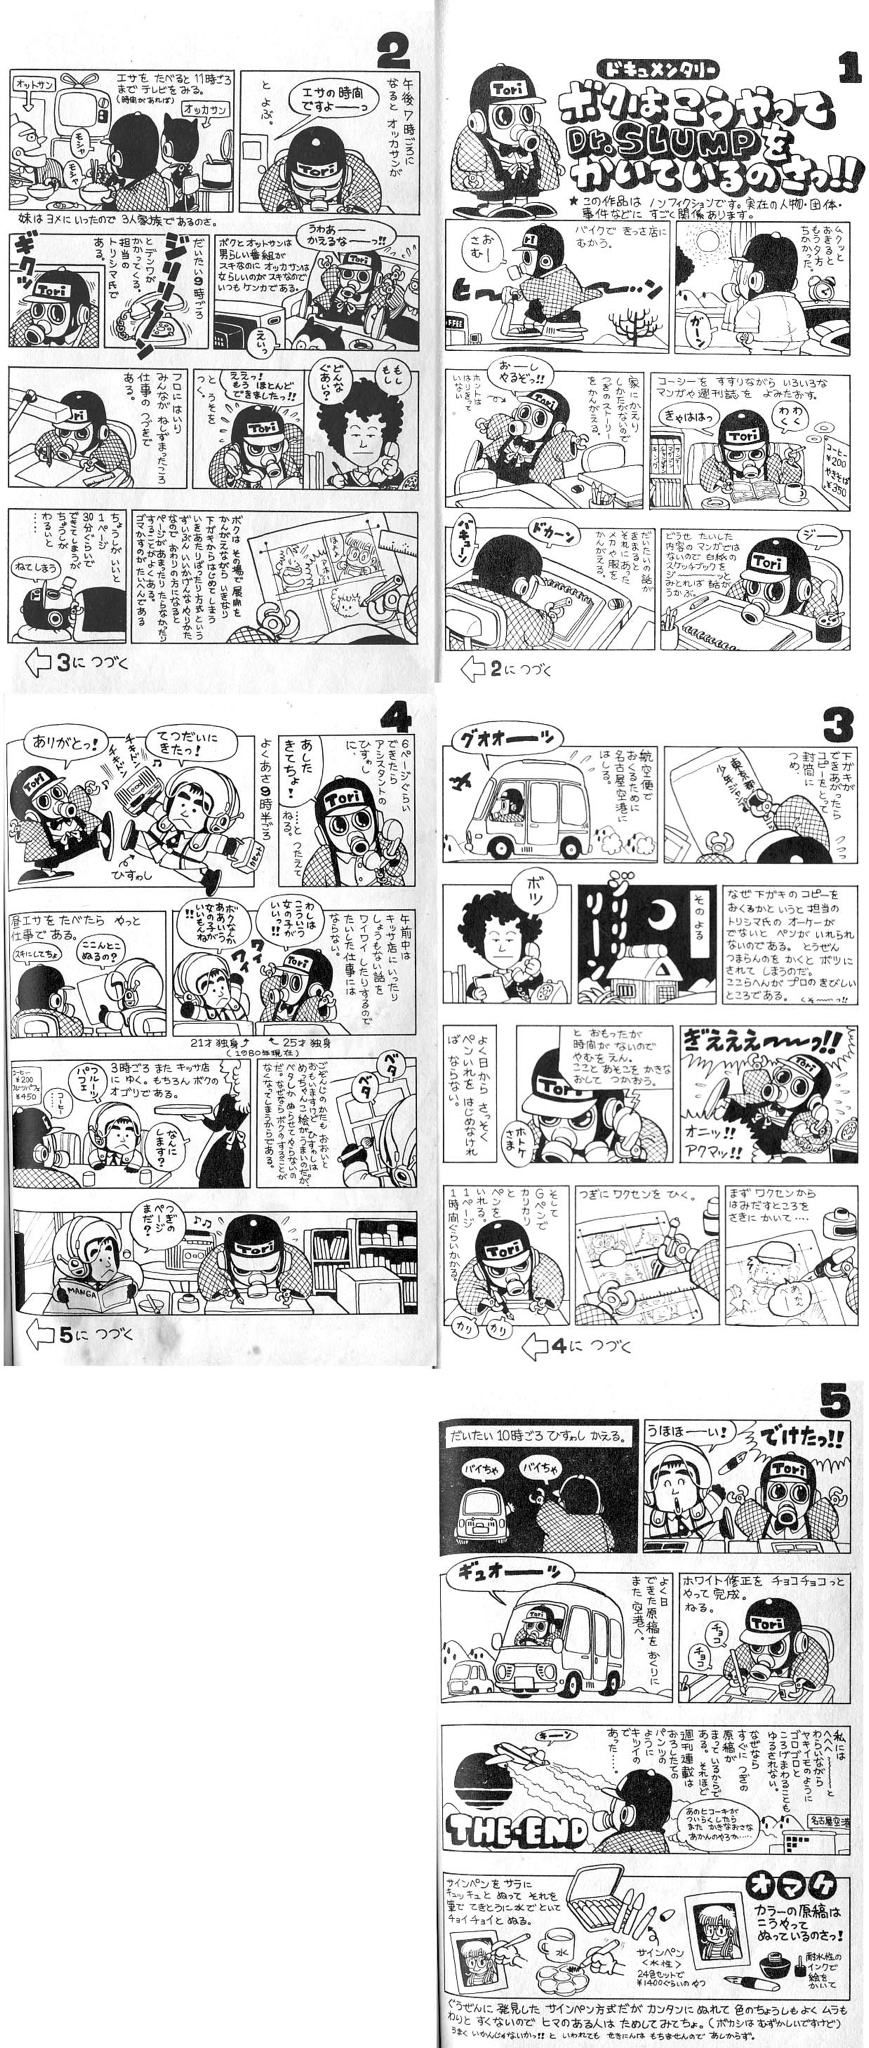 漫画家・真島ヒロさんが「趣味で作っていたフリーゲーム」\n_1